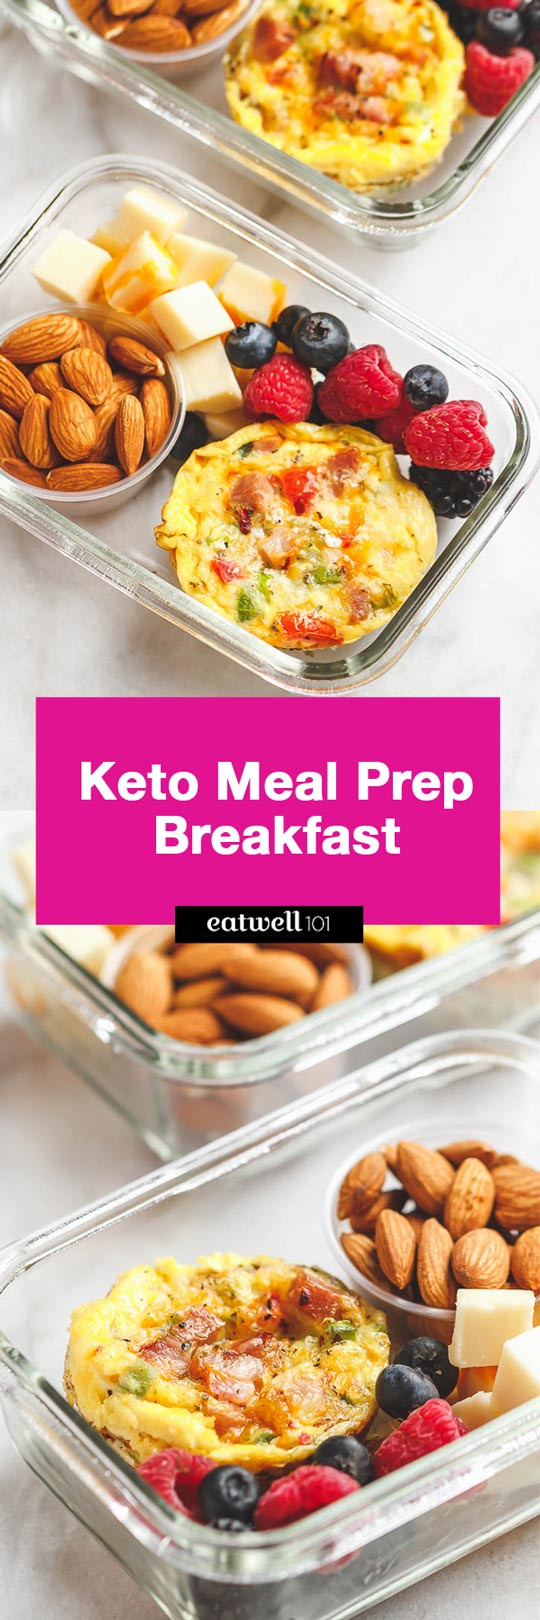 Keto Breakfast Recipes Easy On The Go
 Easy Keto Meal Prep Breakfast Recipe – Best Keto Breakfast